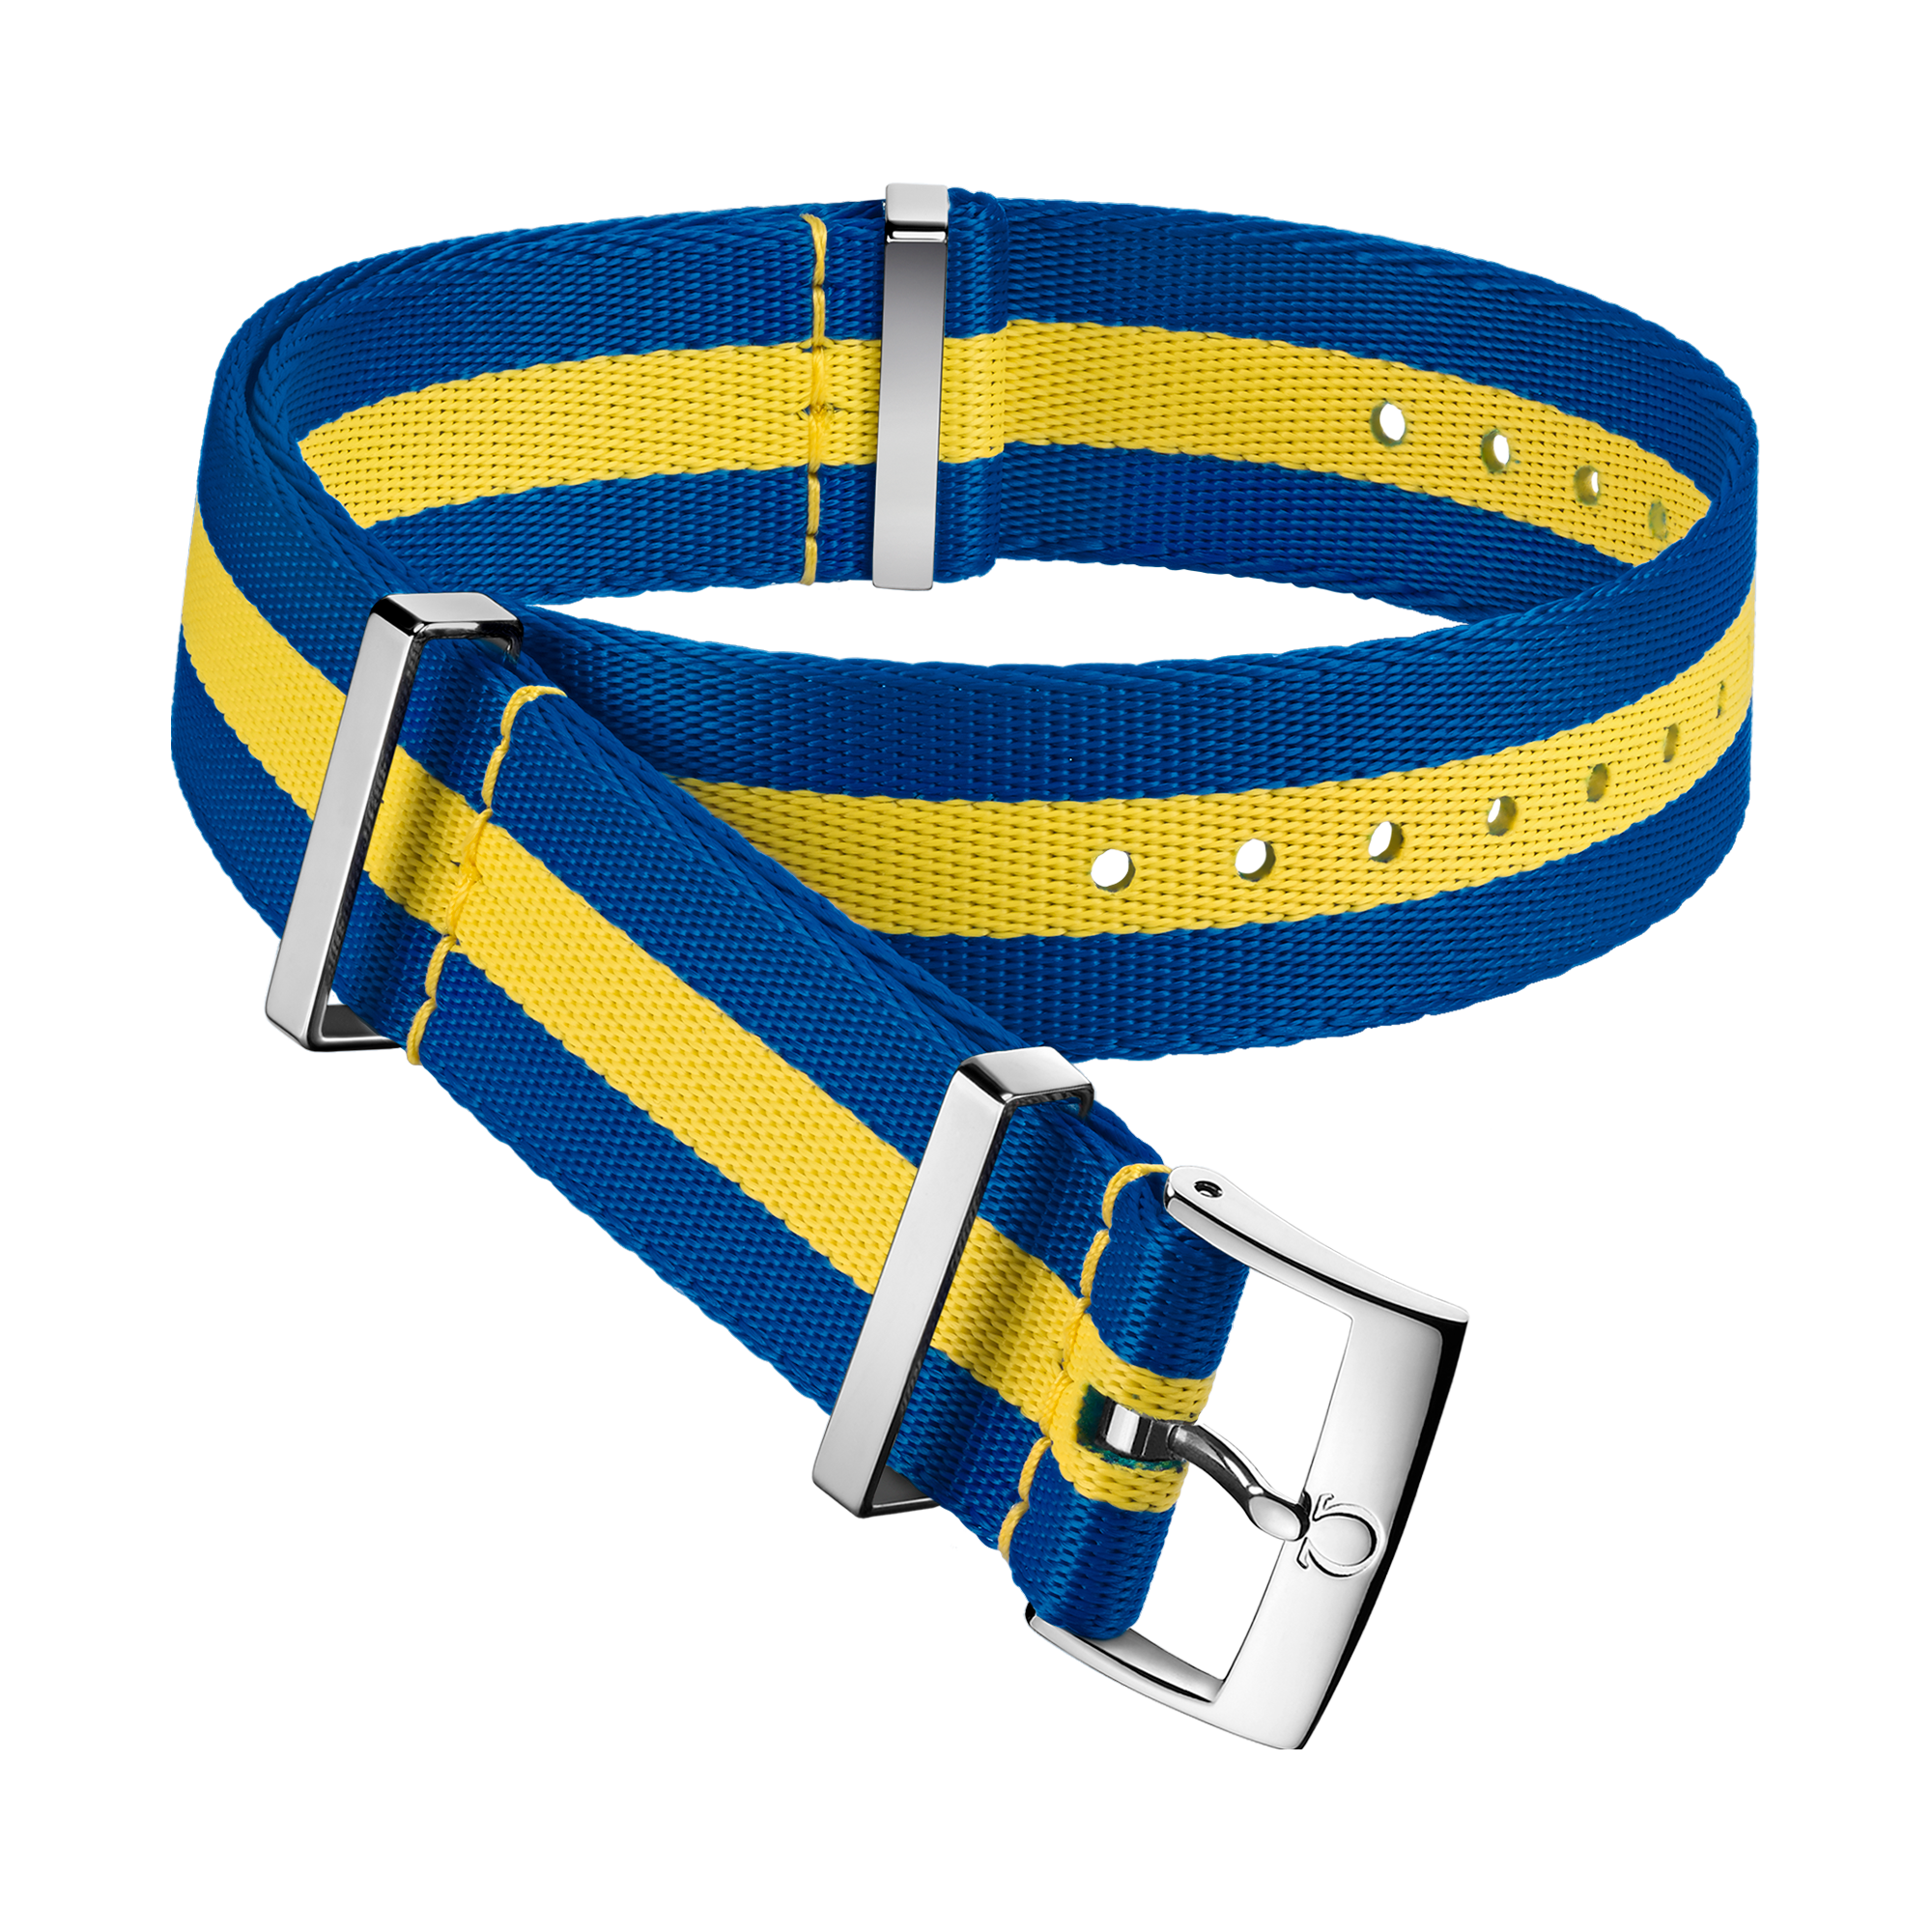 Bracelete NATO - Bracelete em poliamida azul e amarela com 3 faixas - 031CWZ010660